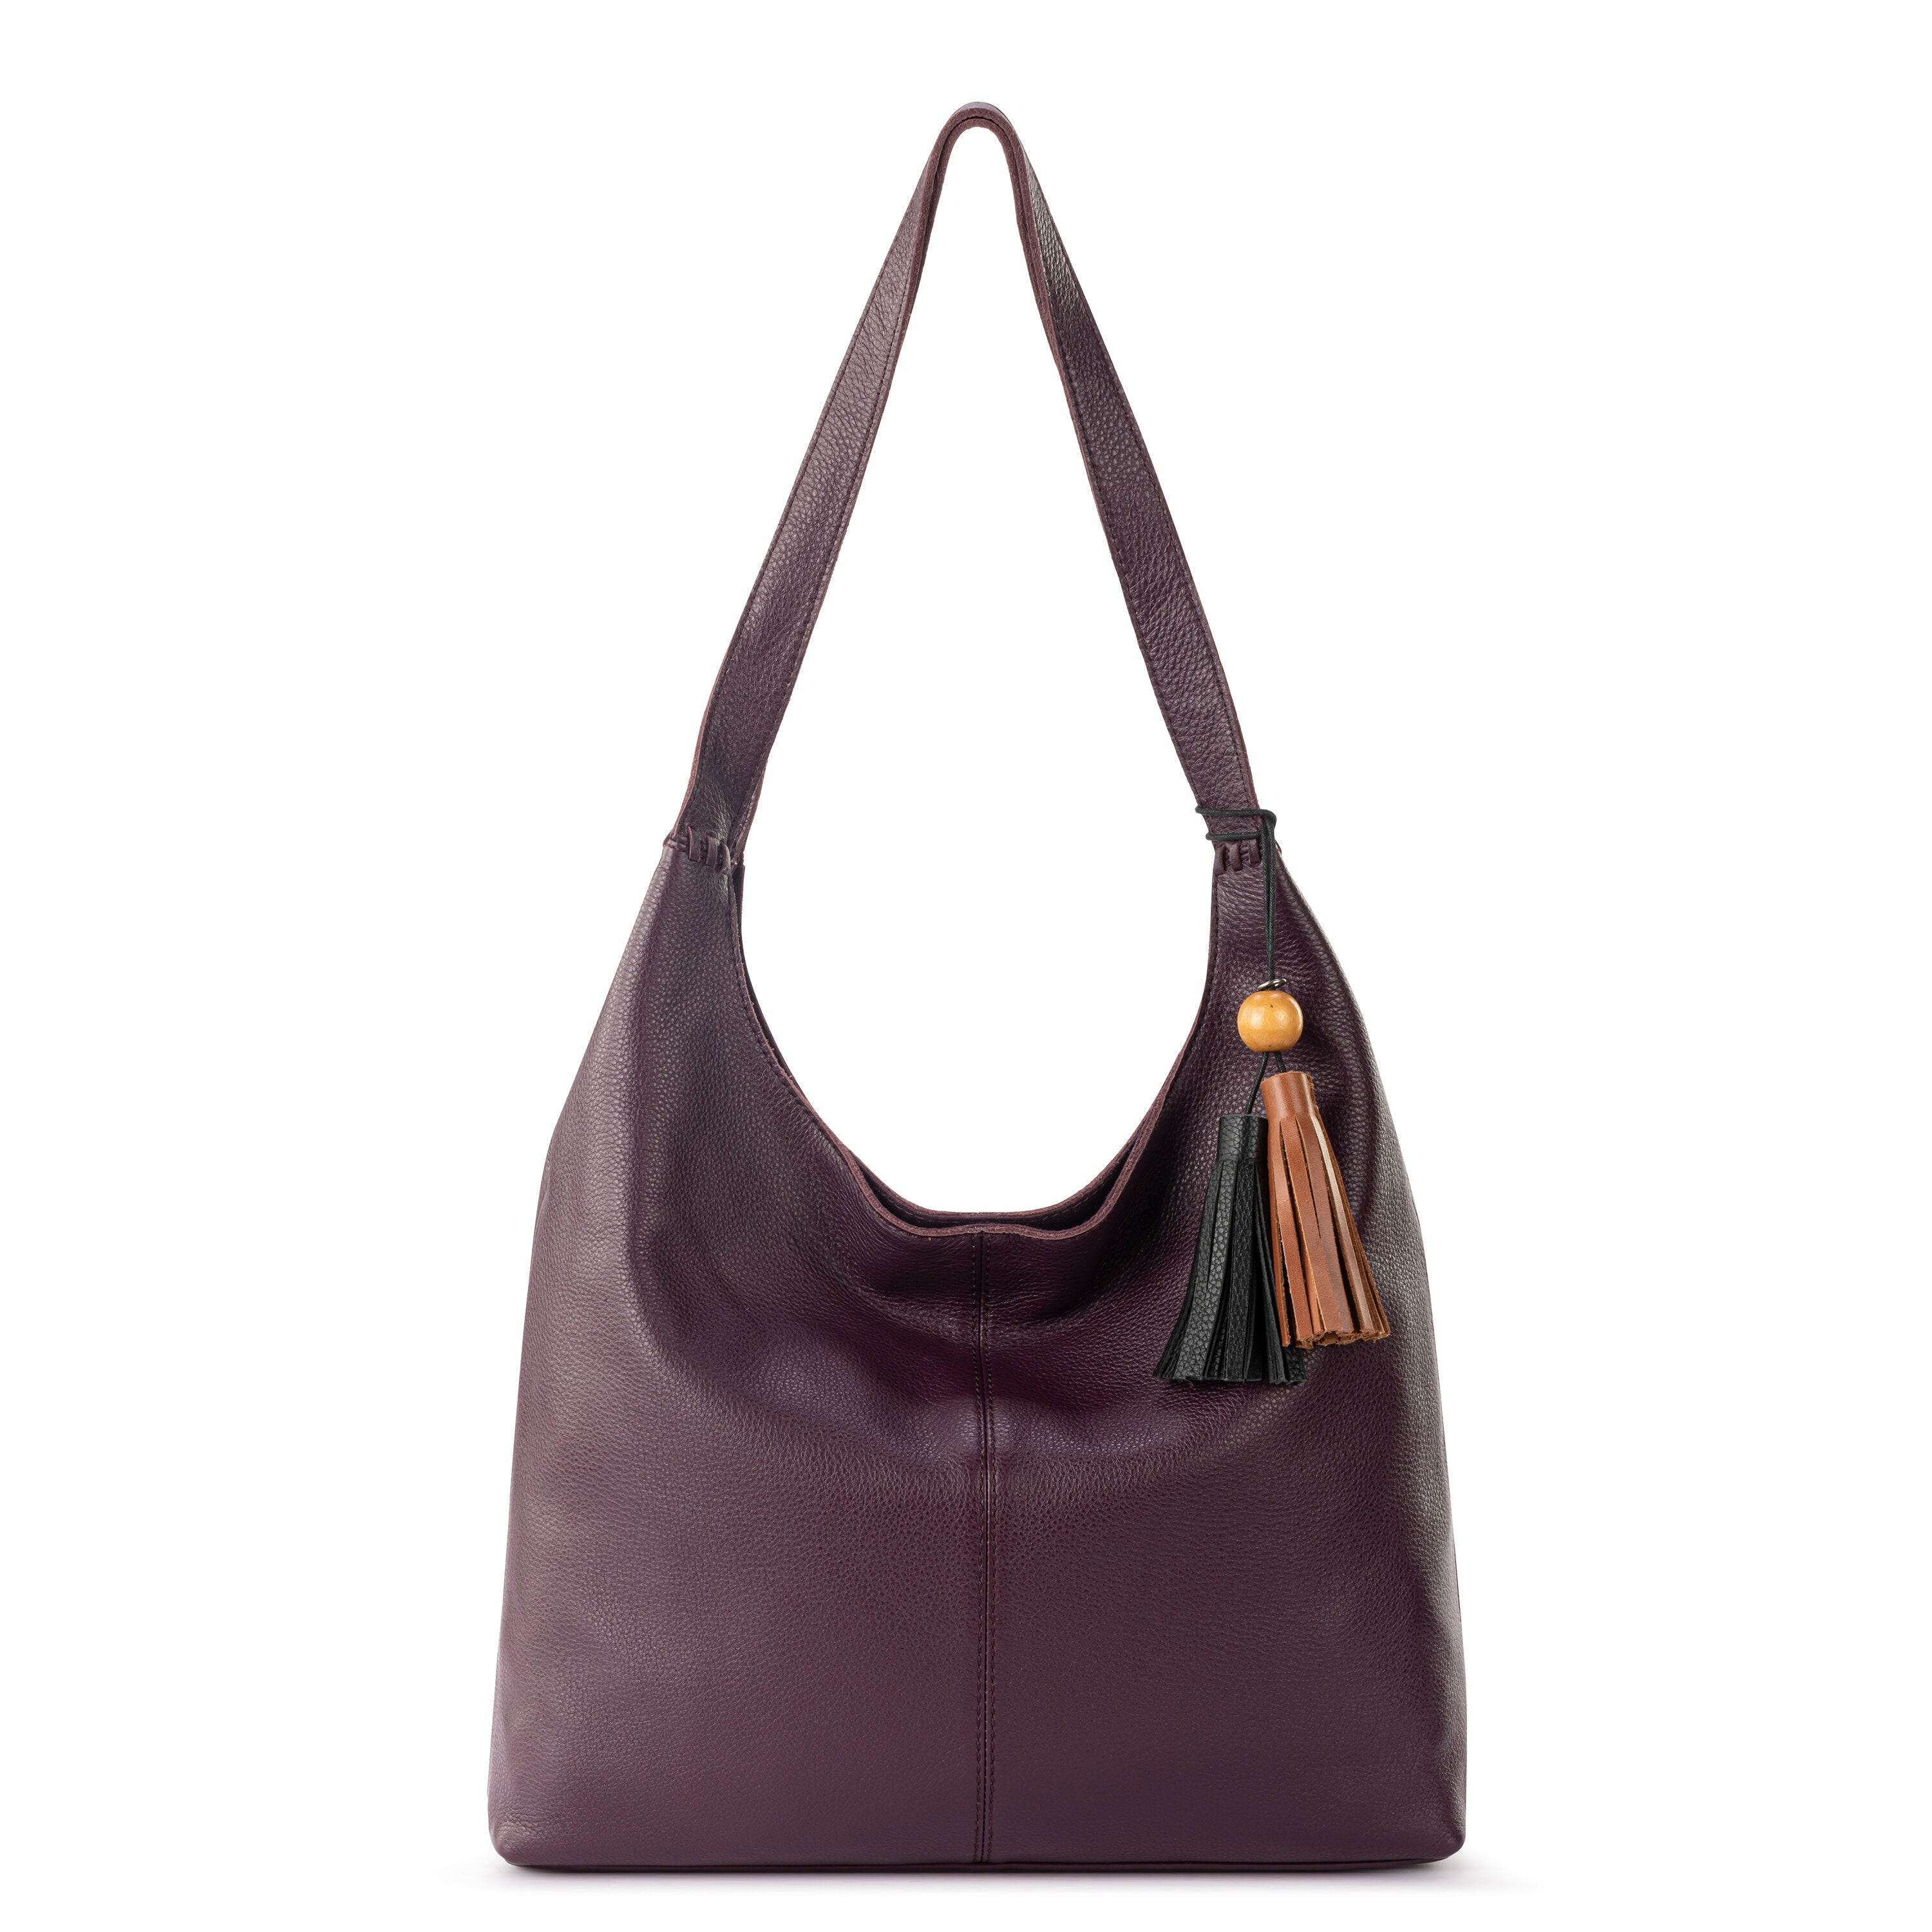 The Sak Brown Leather Women's Large Strap Hobo Shoulder Bag Purse